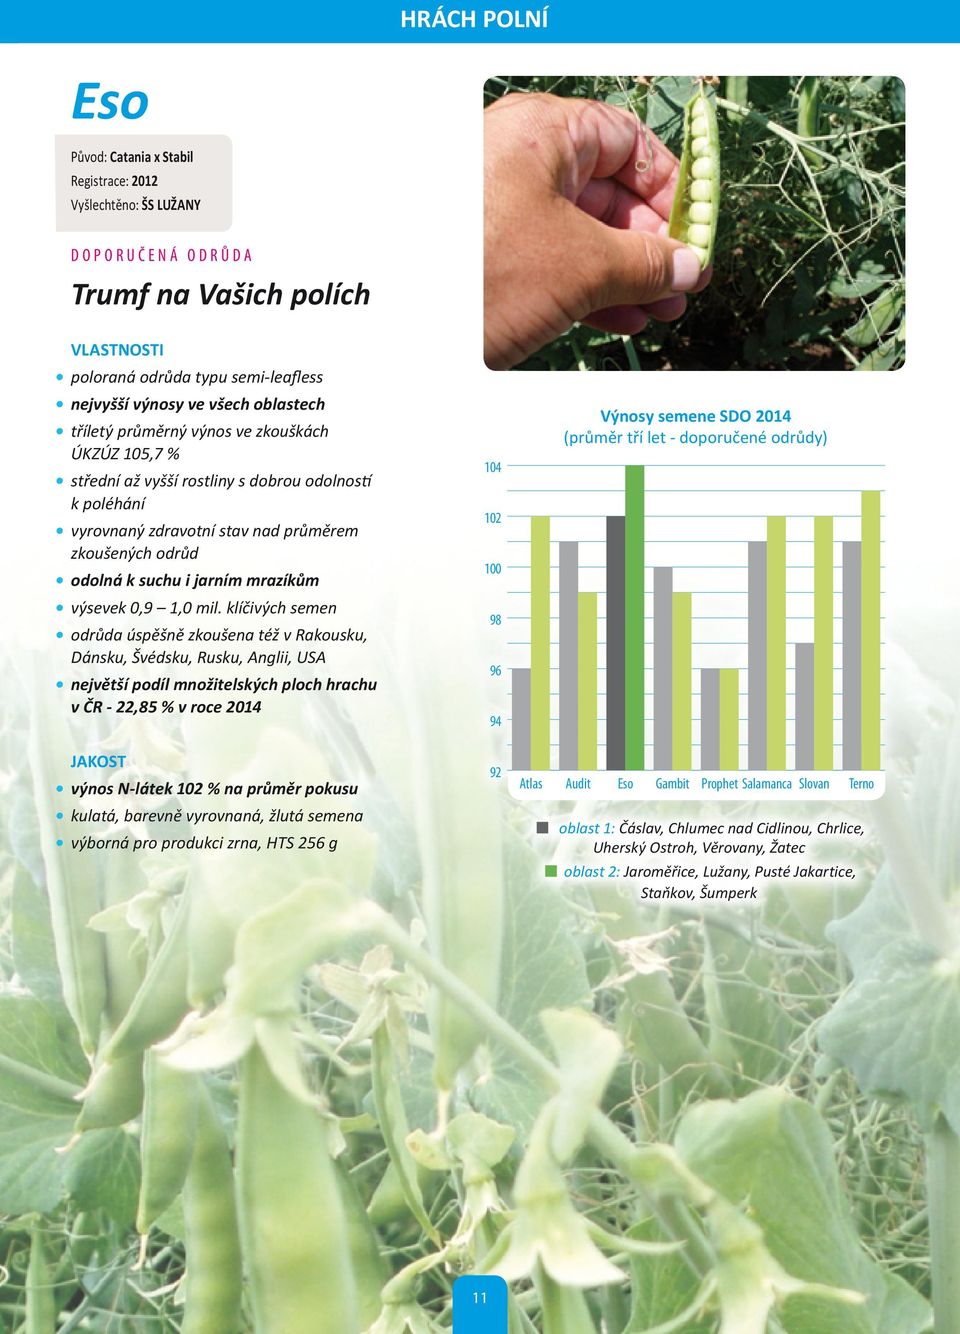 mrazíkům 104 102 100 Výnosy semene SDO 2014 (průměr tří let - doporučené odrůdy) výsevek 0,9 1,0 mil.